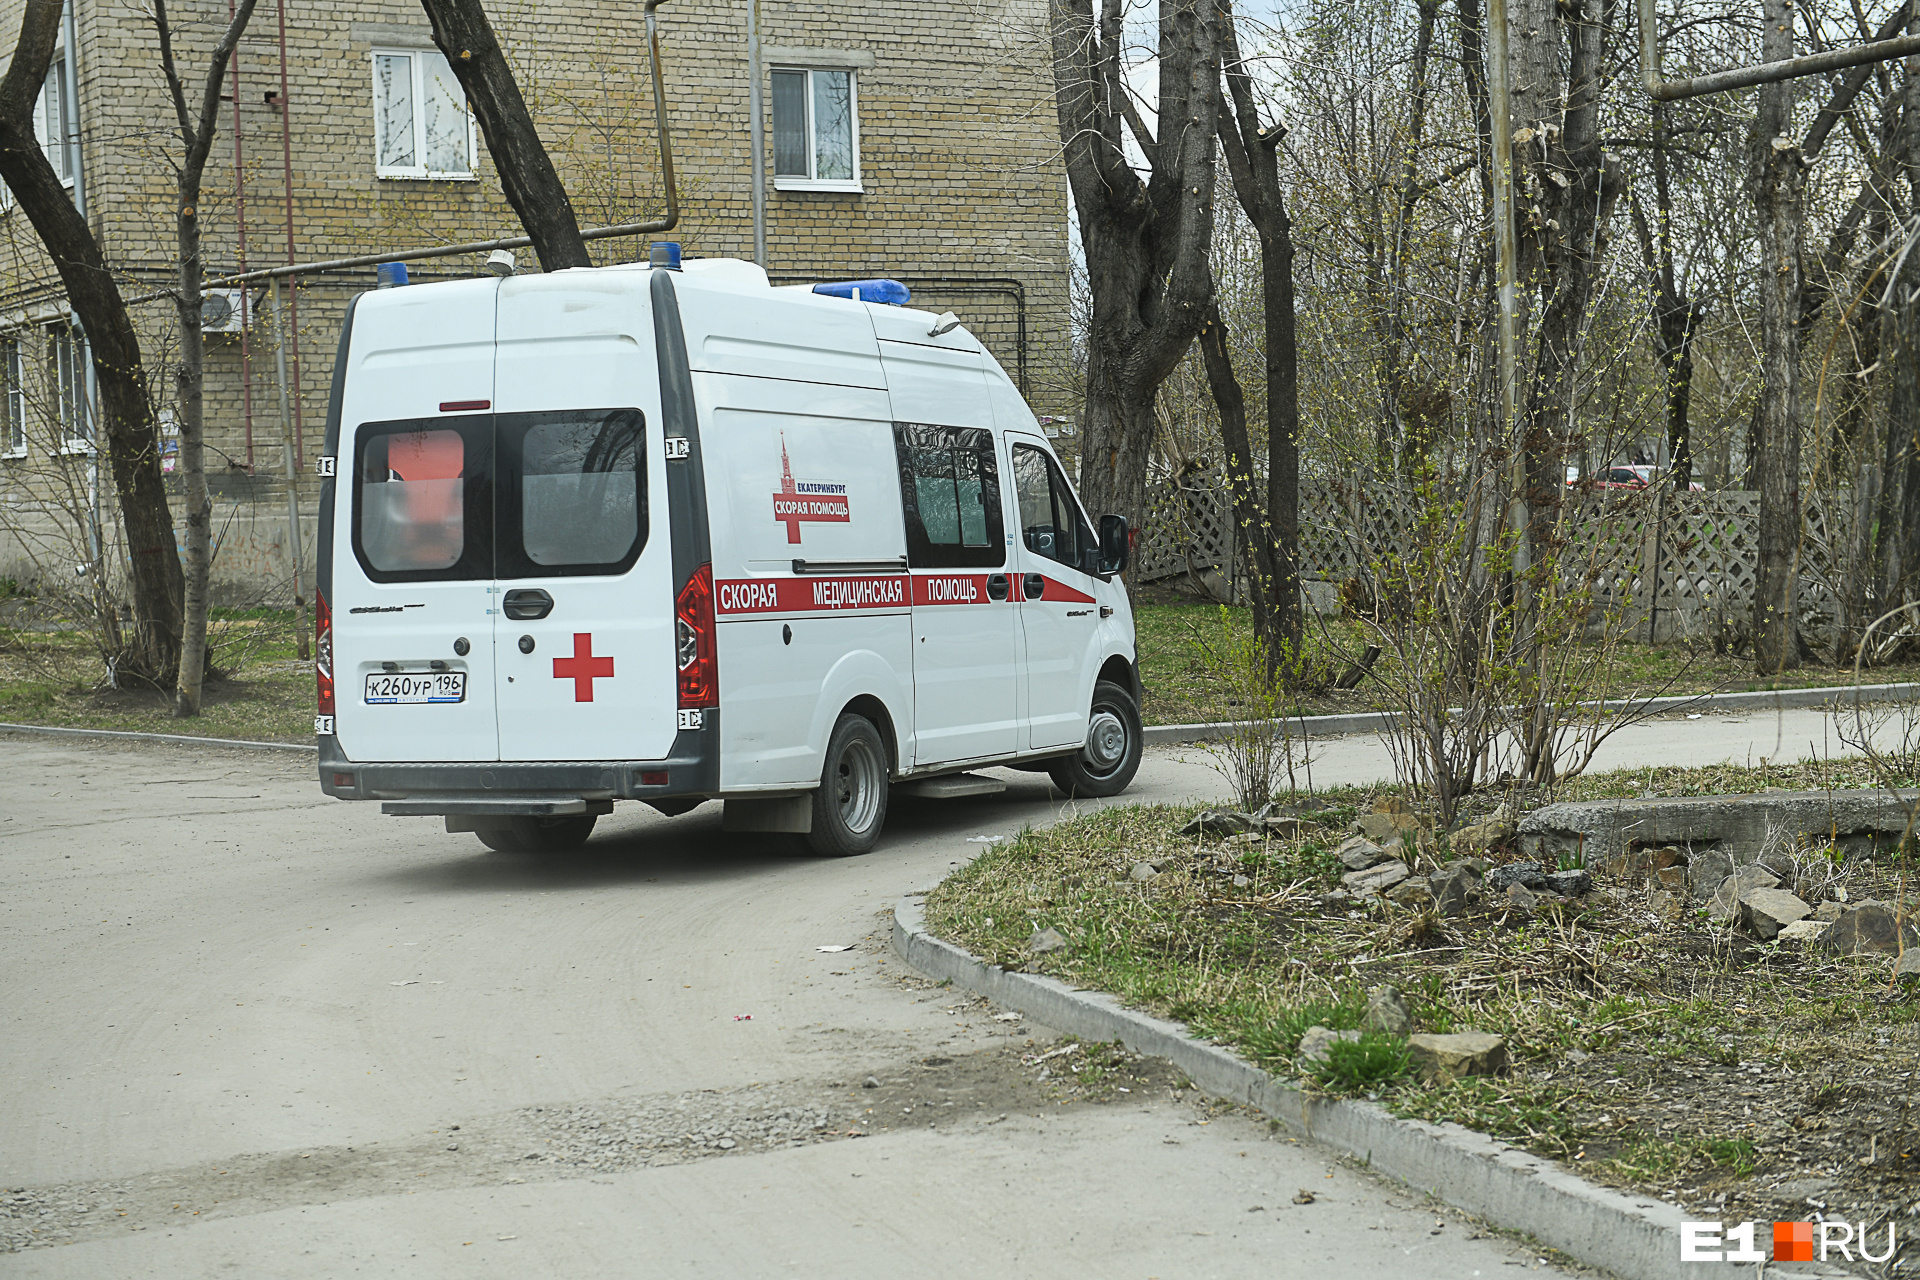 В Екатеринбурге девушка впала в кому после поездки на электросамокате